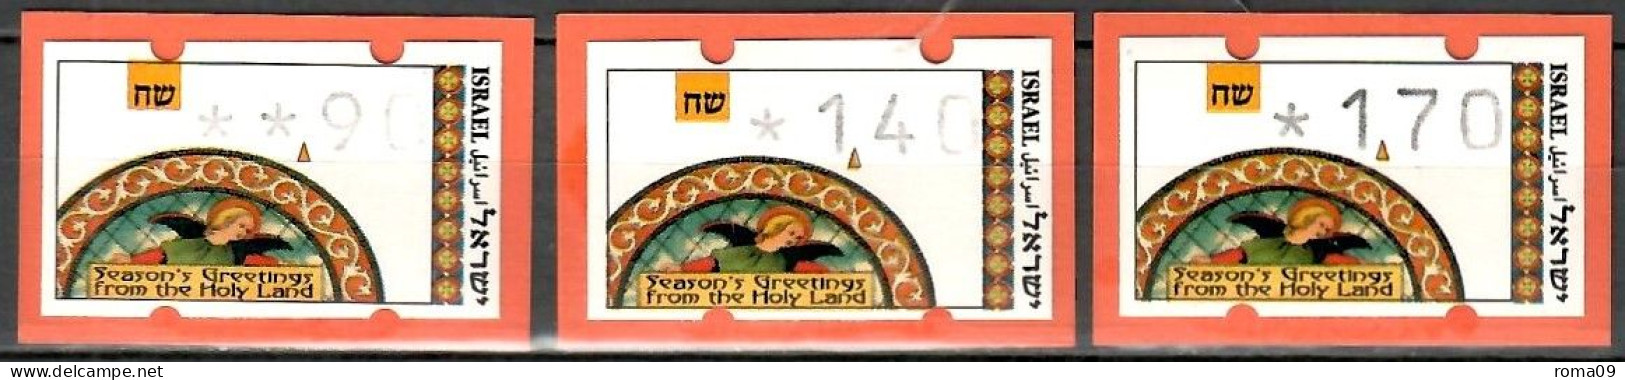 Israel, ATM (Klüssendorf); MiNr. 3; 0,90/1,40/1,70; Postfrisch, Automaten Nr. 023; A-2696 - Automatenmarken (Frama)